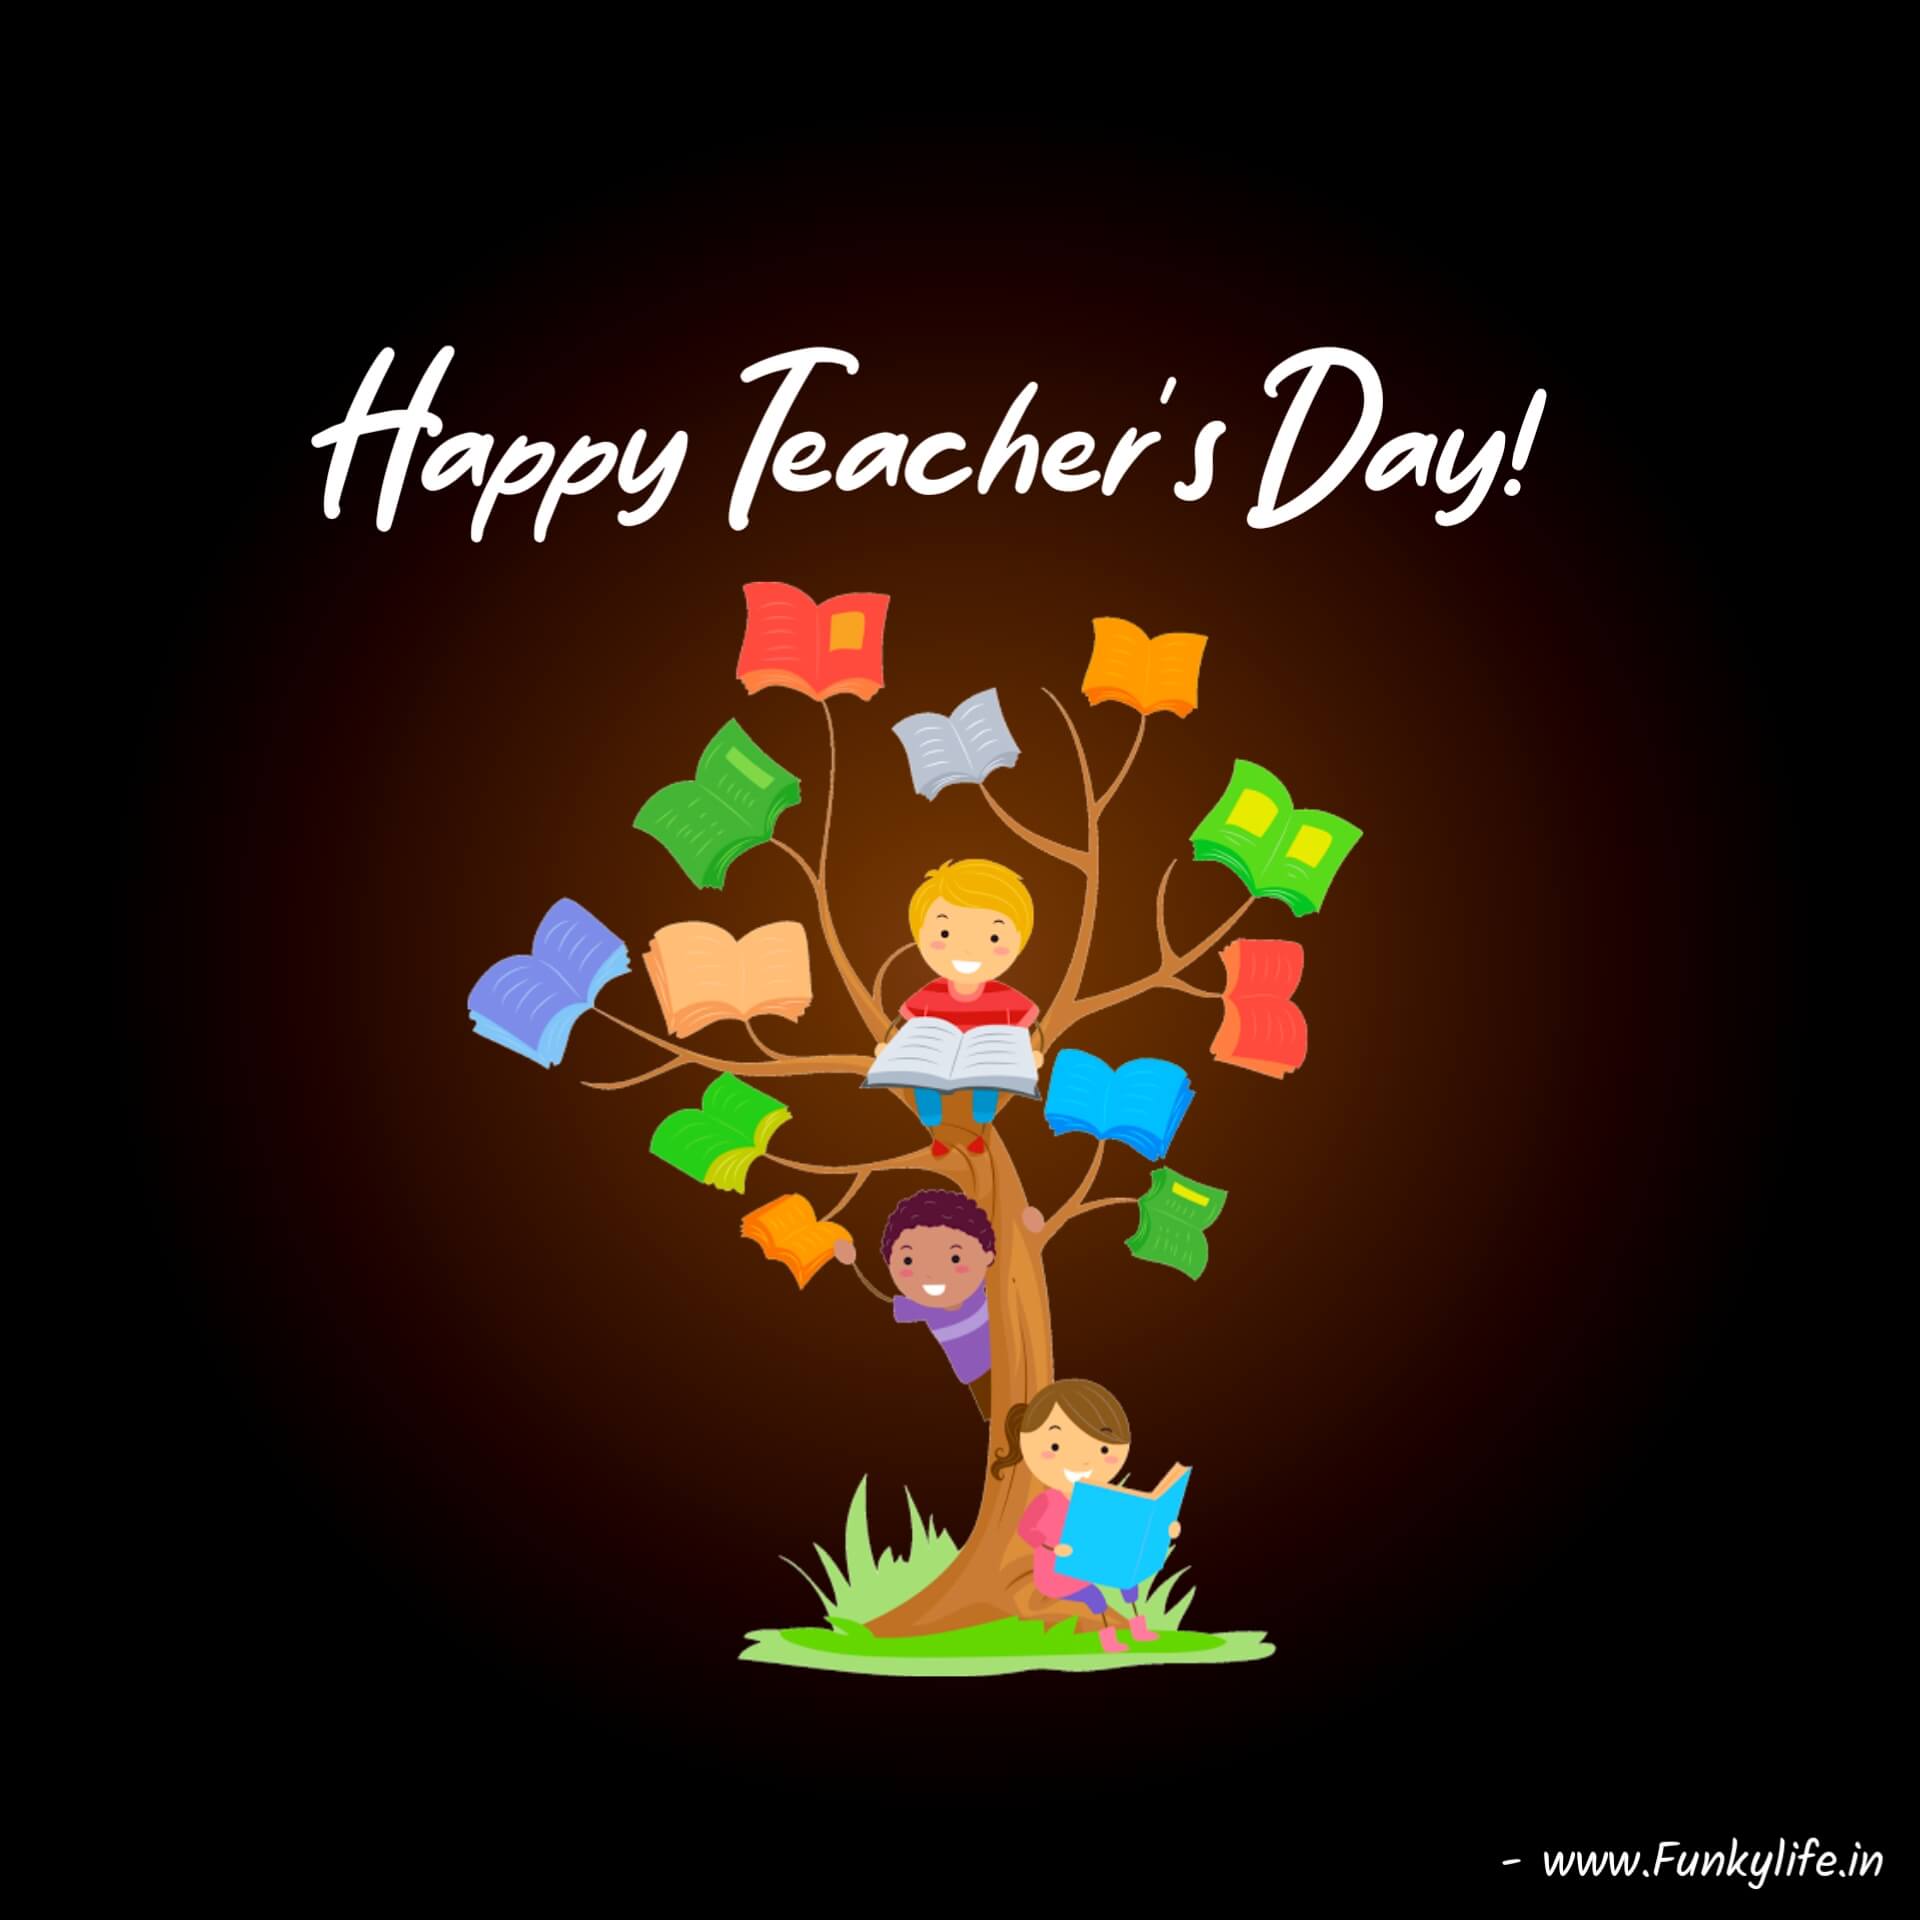 Happy Teacher's Day Image